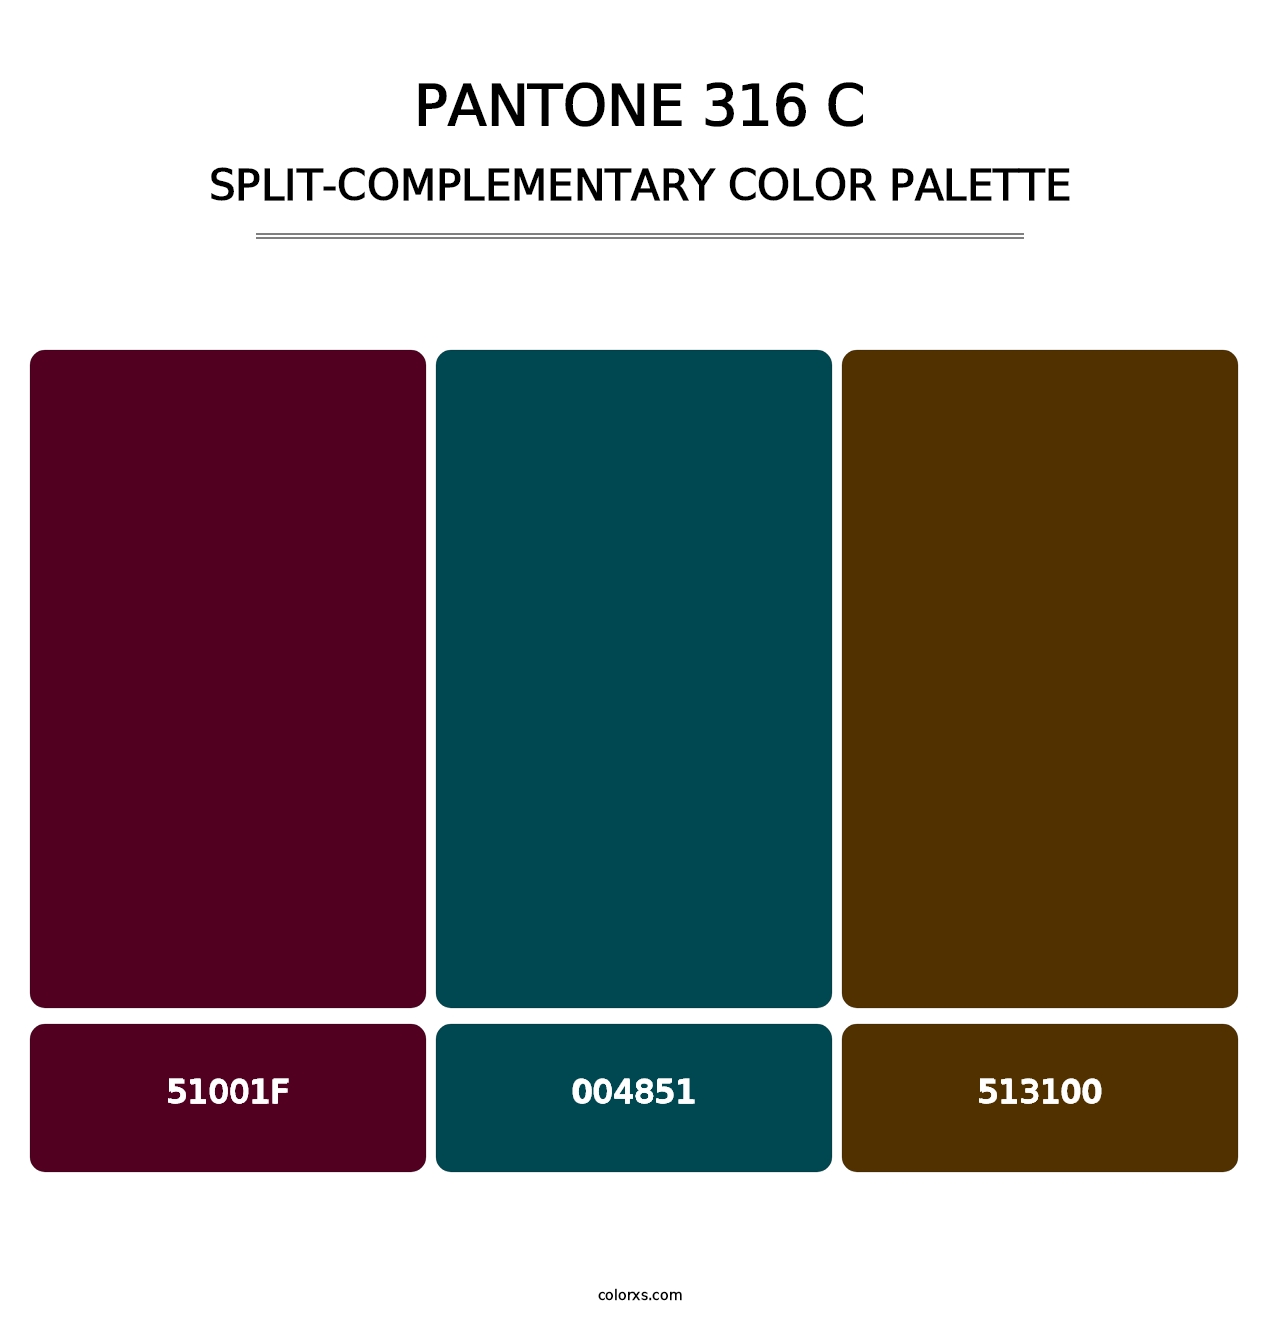 PANTONE 316 C - Split-Complementary Color Palette